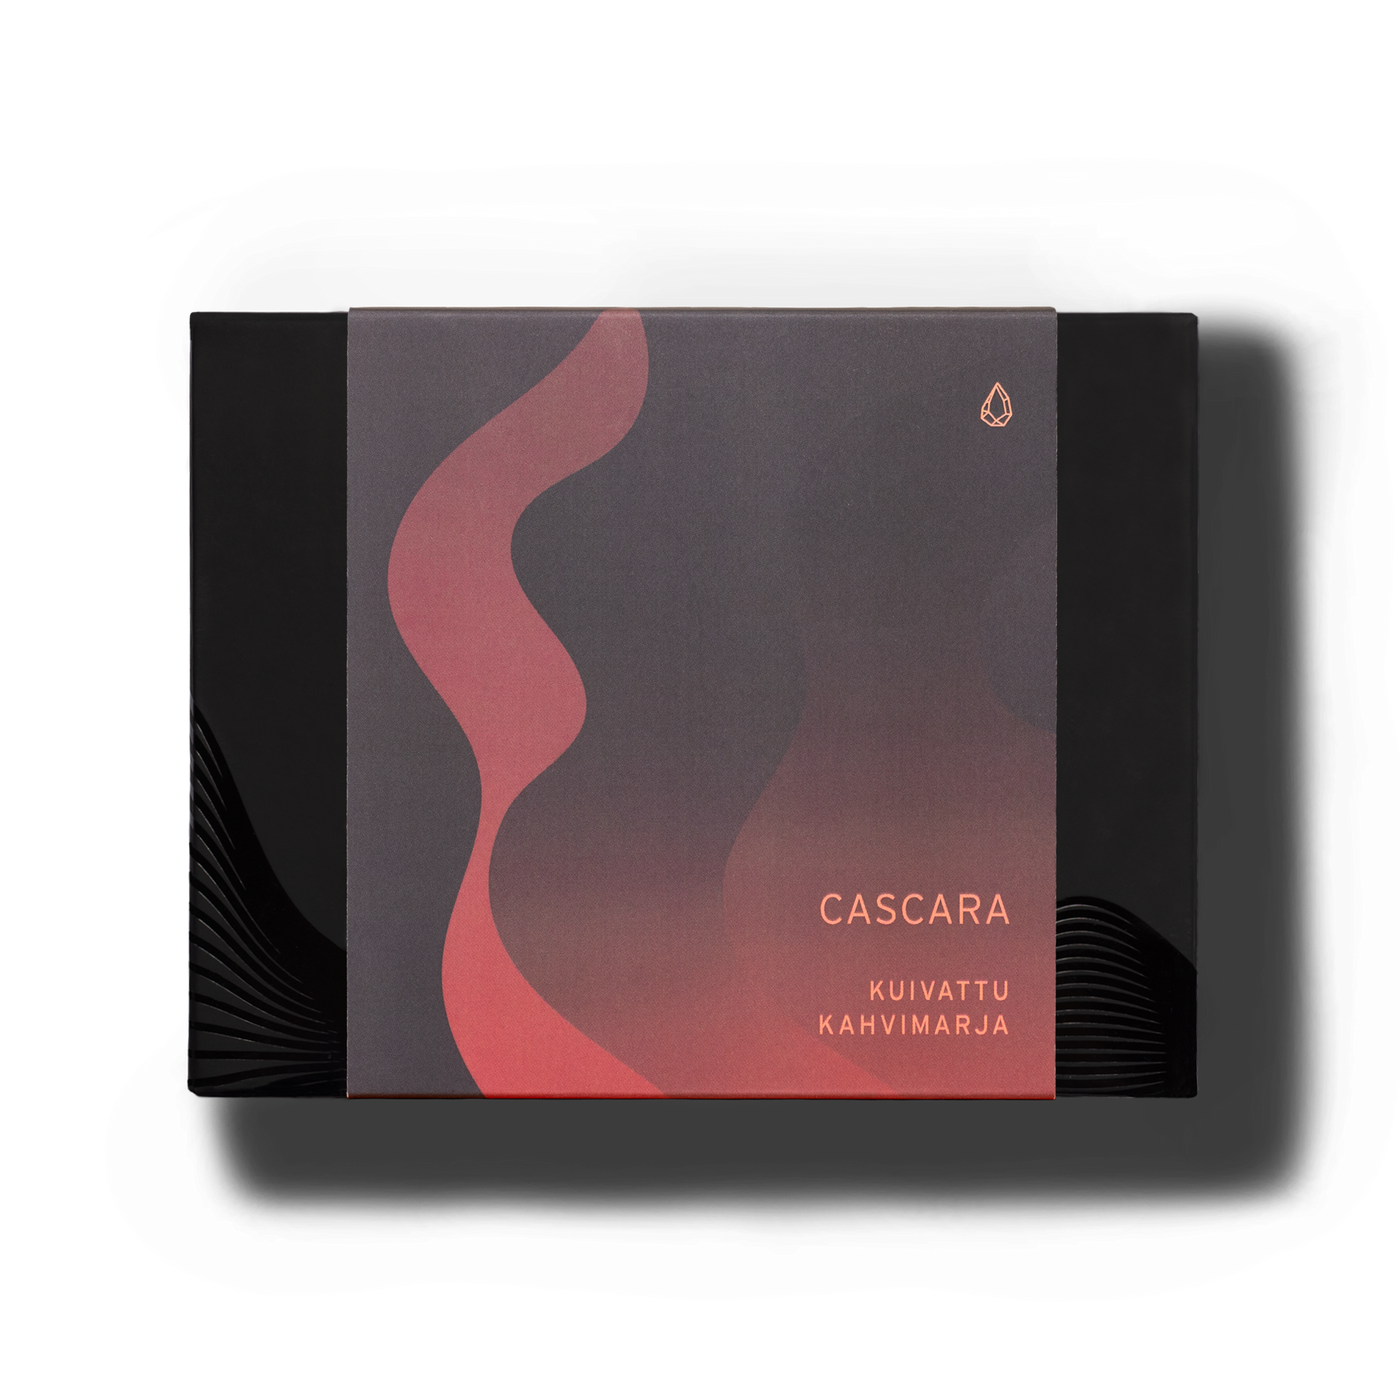 CASCARA - Kuivattu kahvimarja - Kahiwa Coffee Roasters